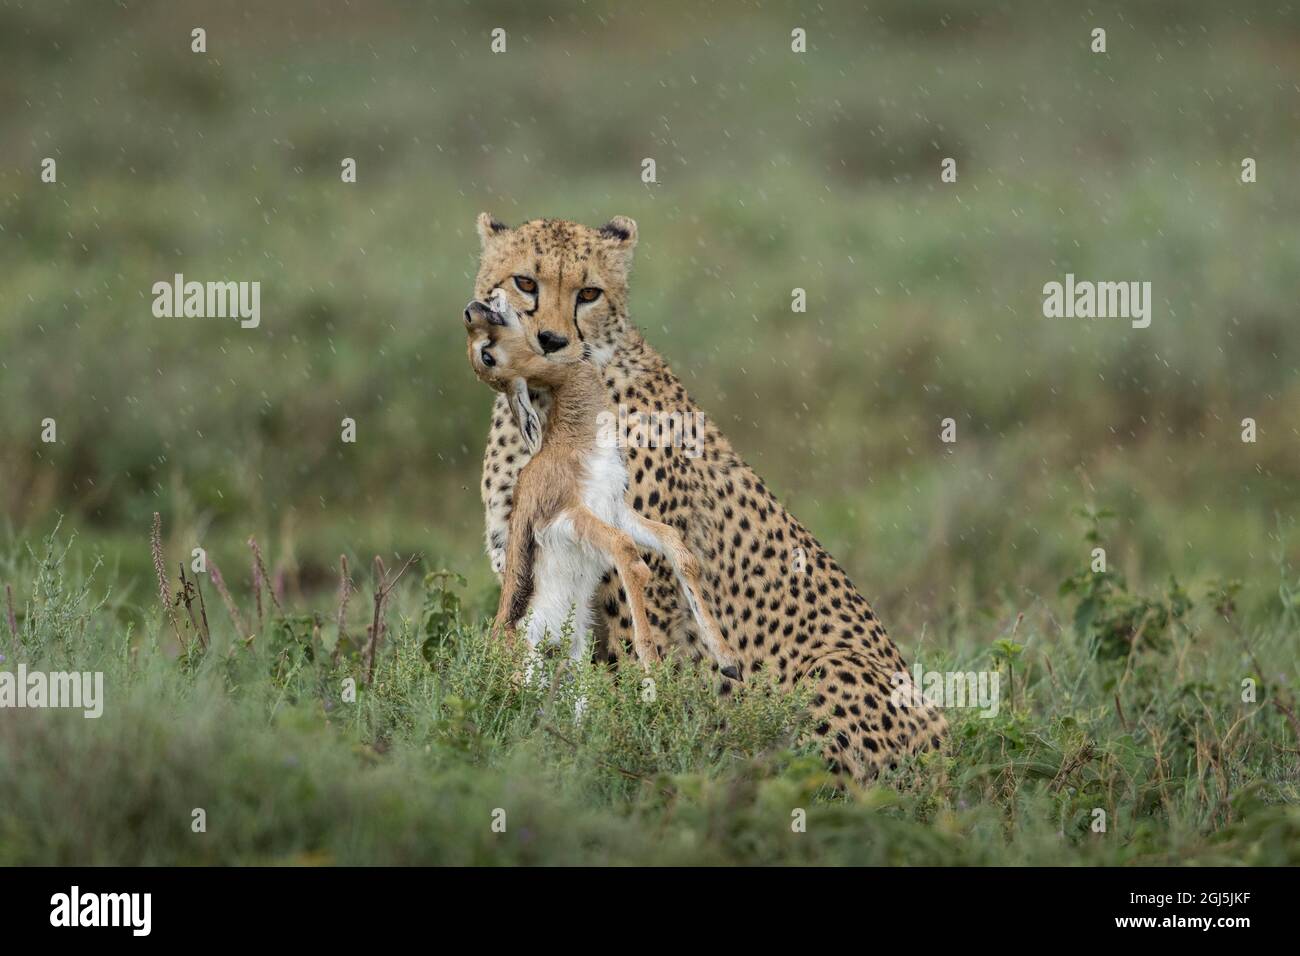 Tanzanie, zone de conservation de Ngorongoro, Cheetah adulte (Acinonyx jubatas) se serre sur la gorge de la Gazelle de Thomson (Eudorcas thomsoniI) veau après su Banque D'Images